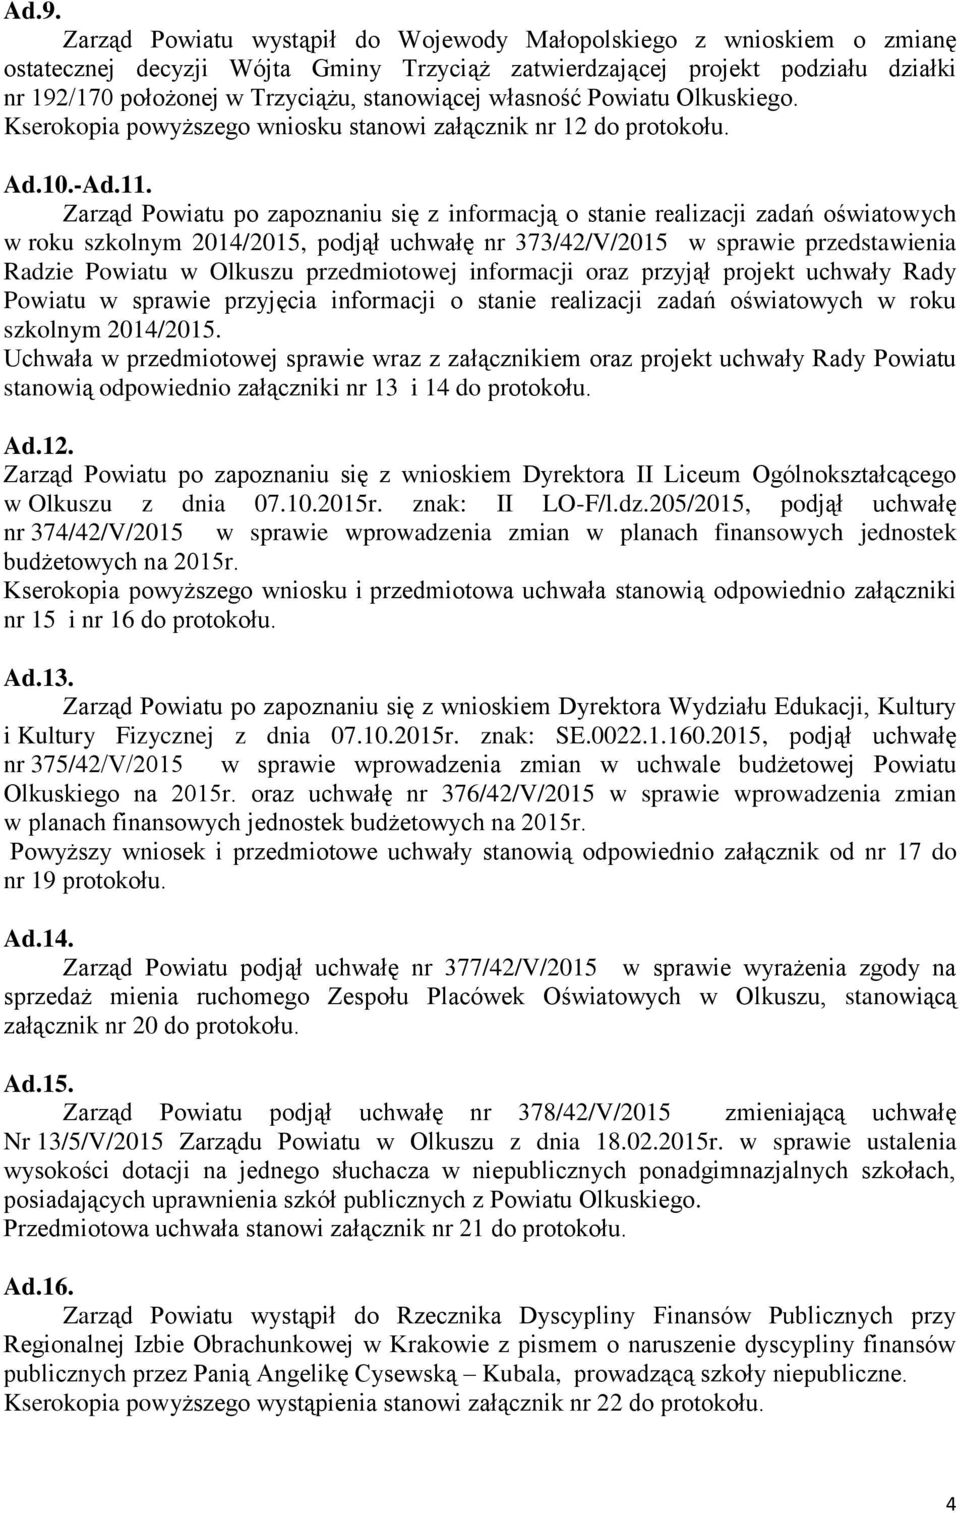 Zarząd Powiatu po zapoznaniu się z informacją o stanie realizacji zadań oświatowych w roku szkolnym 2014/2015, podjął uchwałę nr 373/42/V/2015 w sprawie przedstawienia Radzie Powiatu w Olkuszu